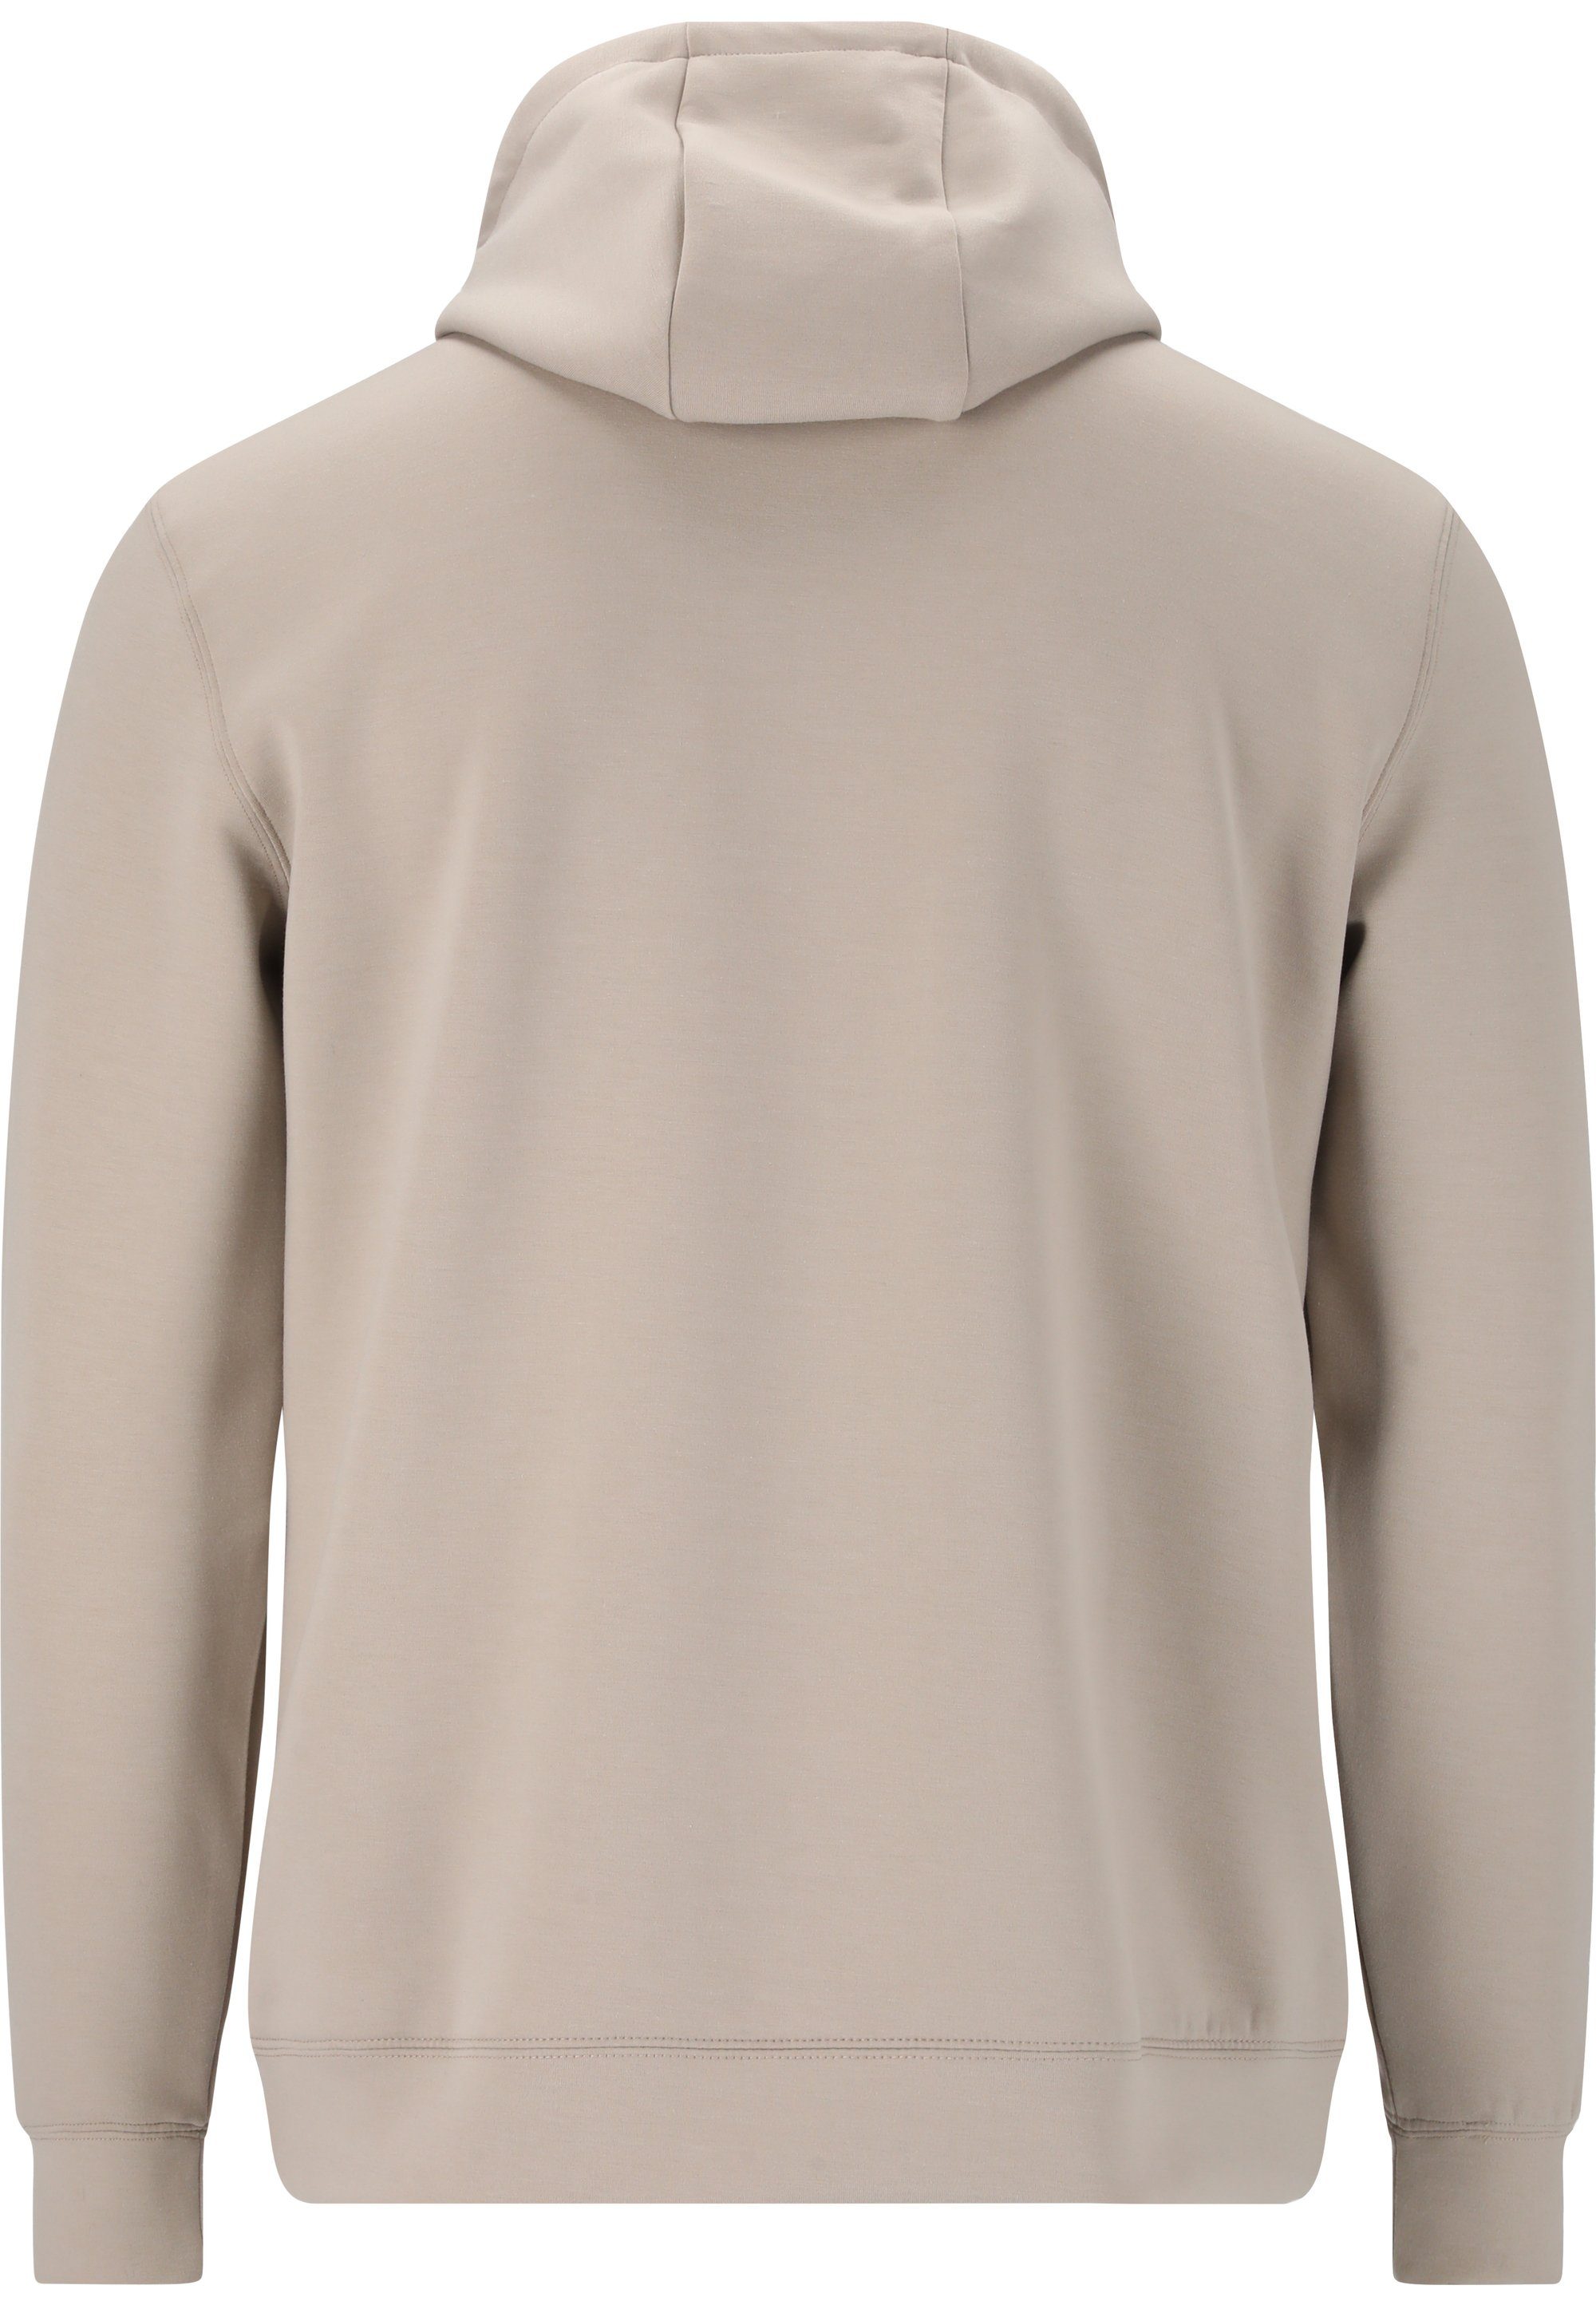 Sweatshirt mit kuscheliger, einstellbarer Kapuze grau Virtus Taro